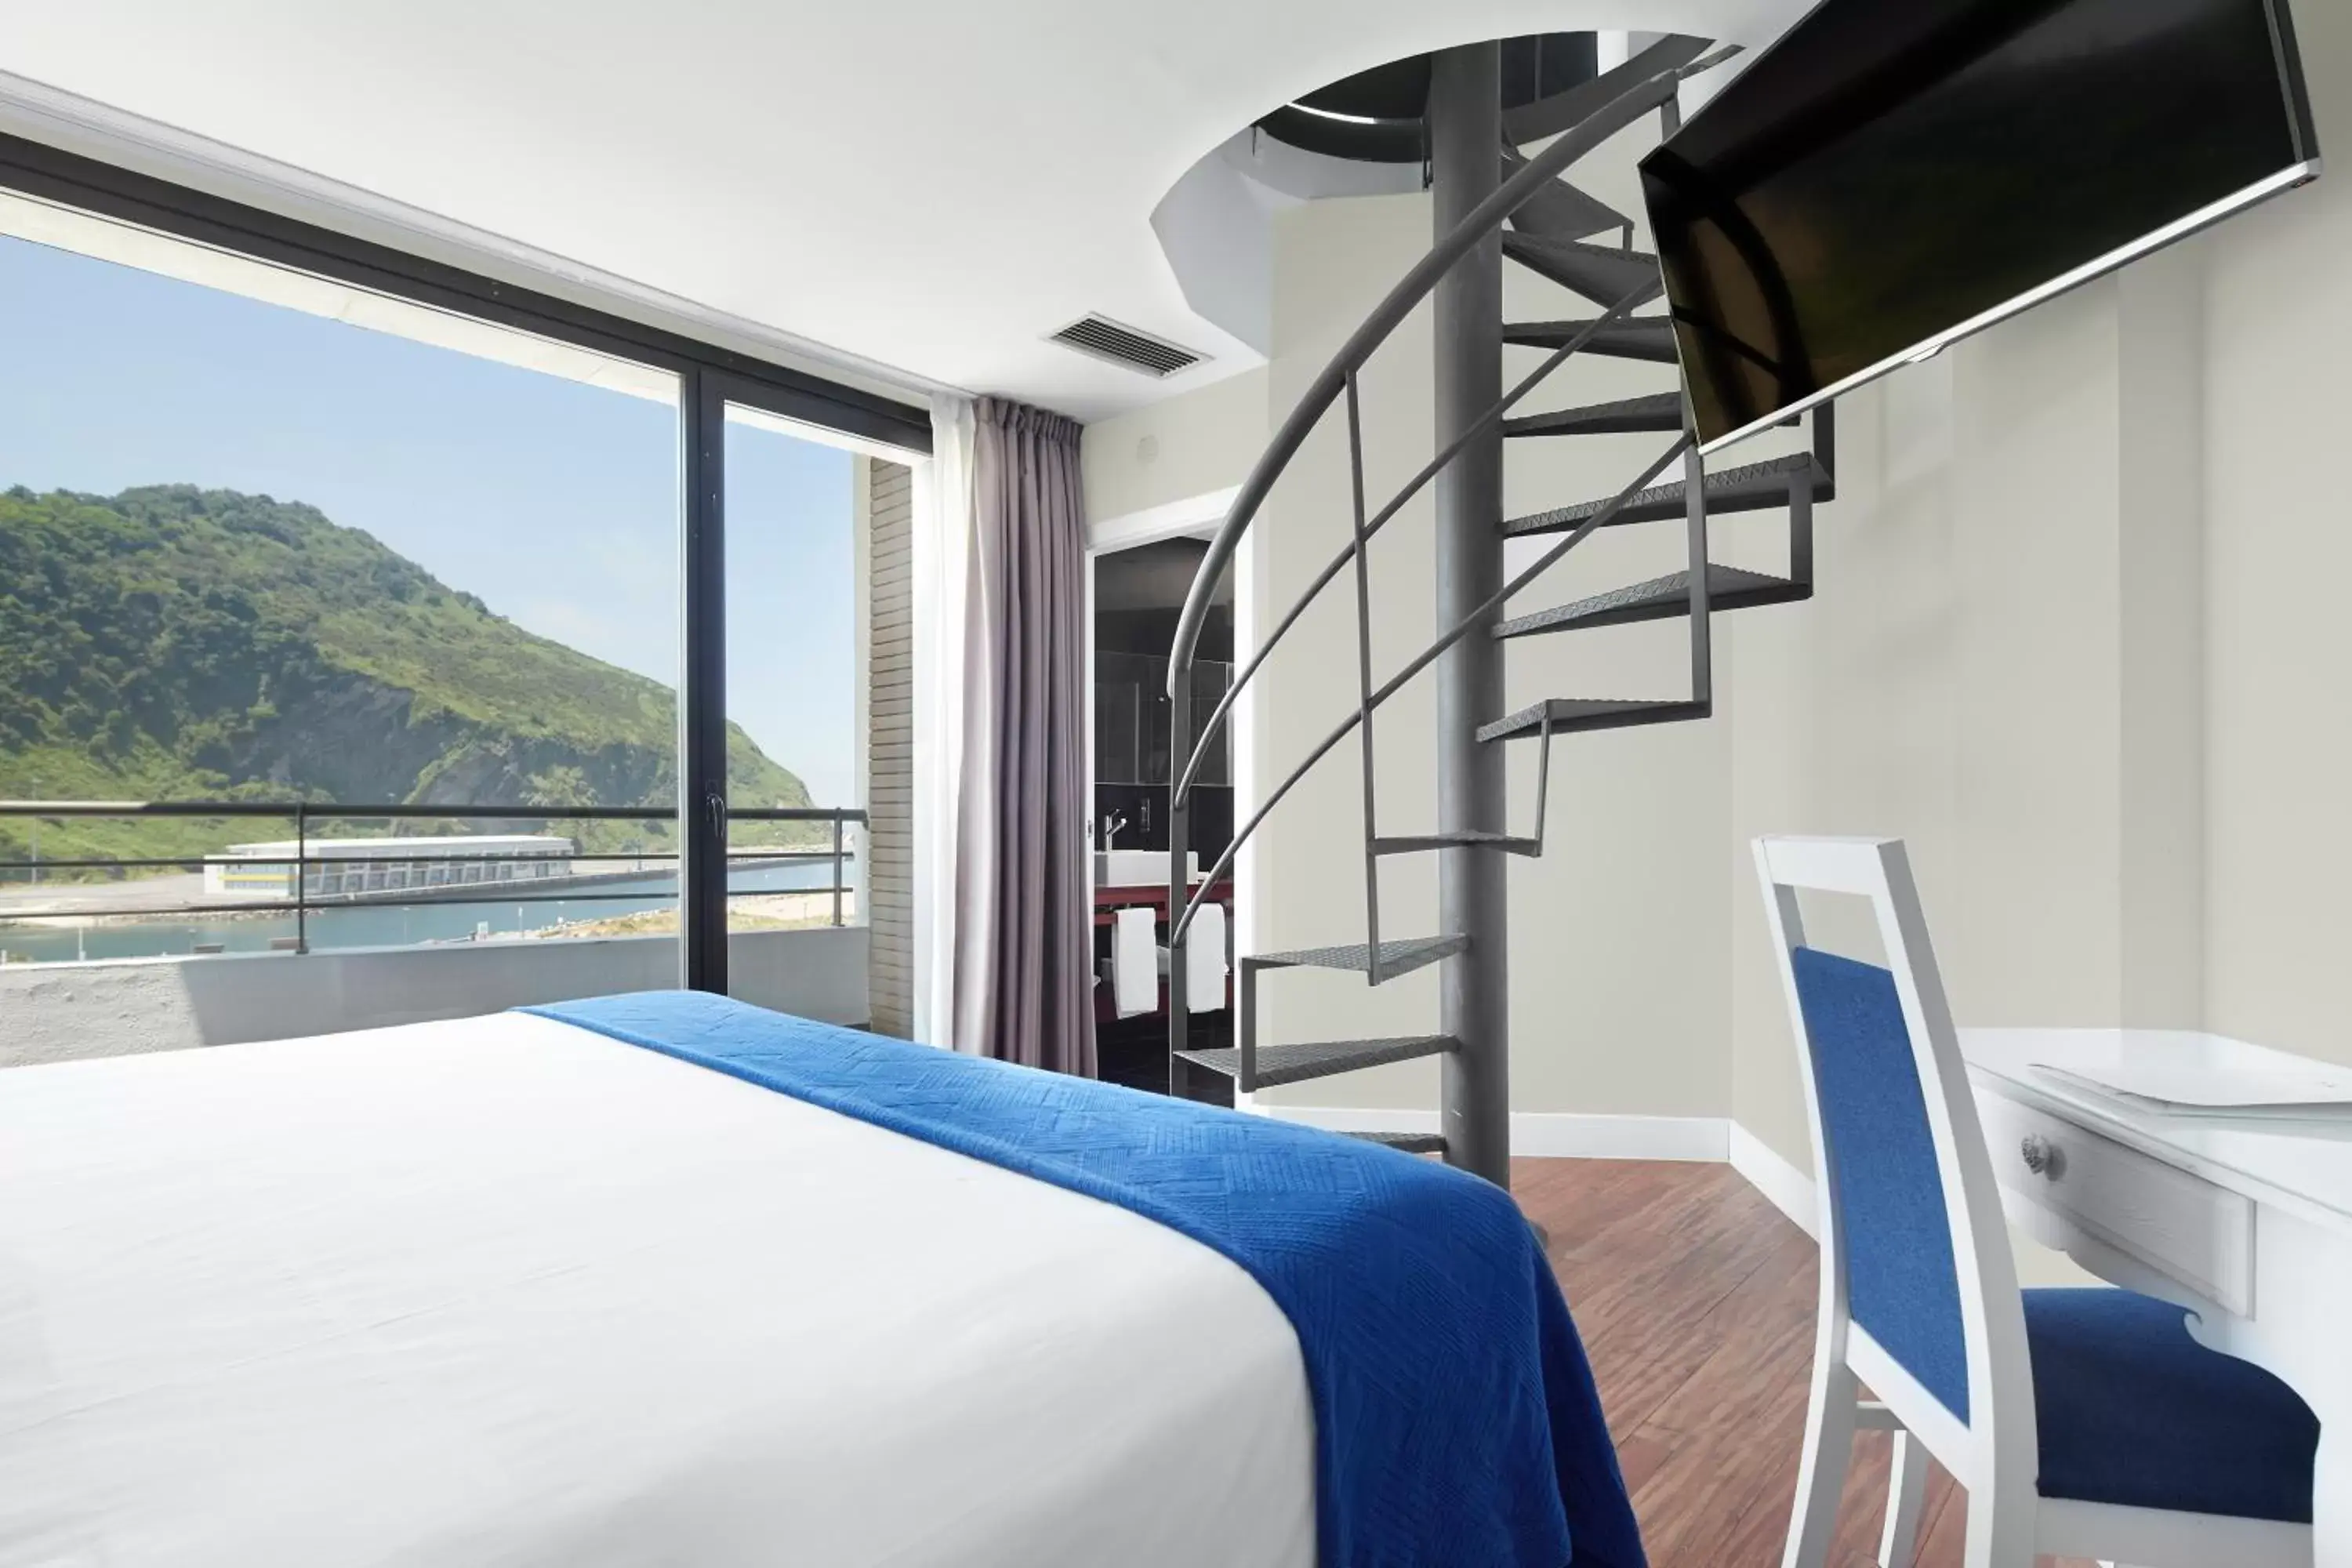 Photo of the whole room in Hotel & Thalasso Villa Antilla - Habitaciones con Terraza - Thalasso incluida